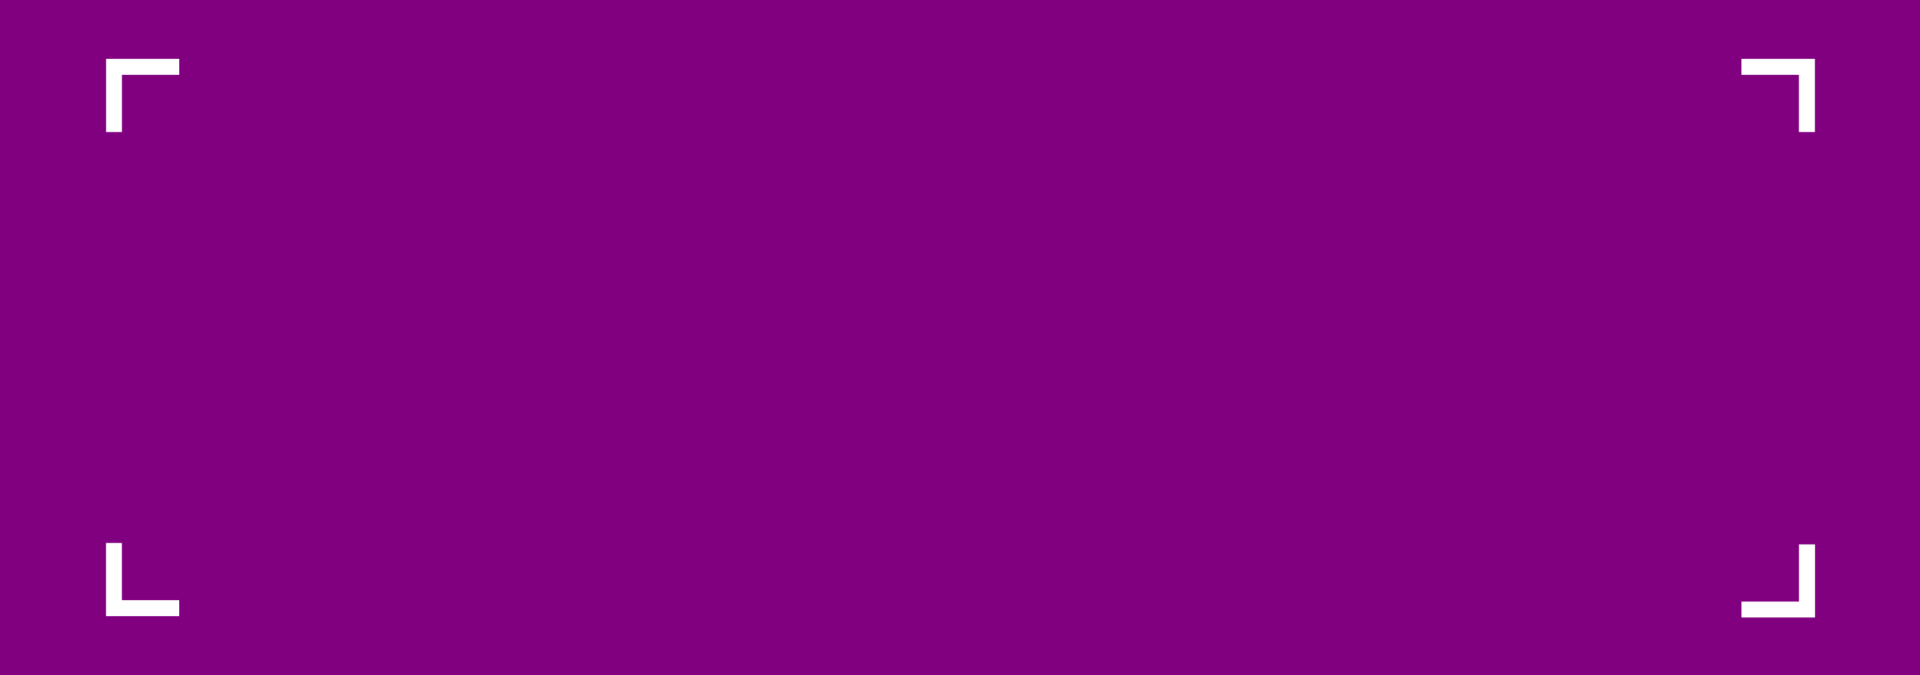 Bannière violette